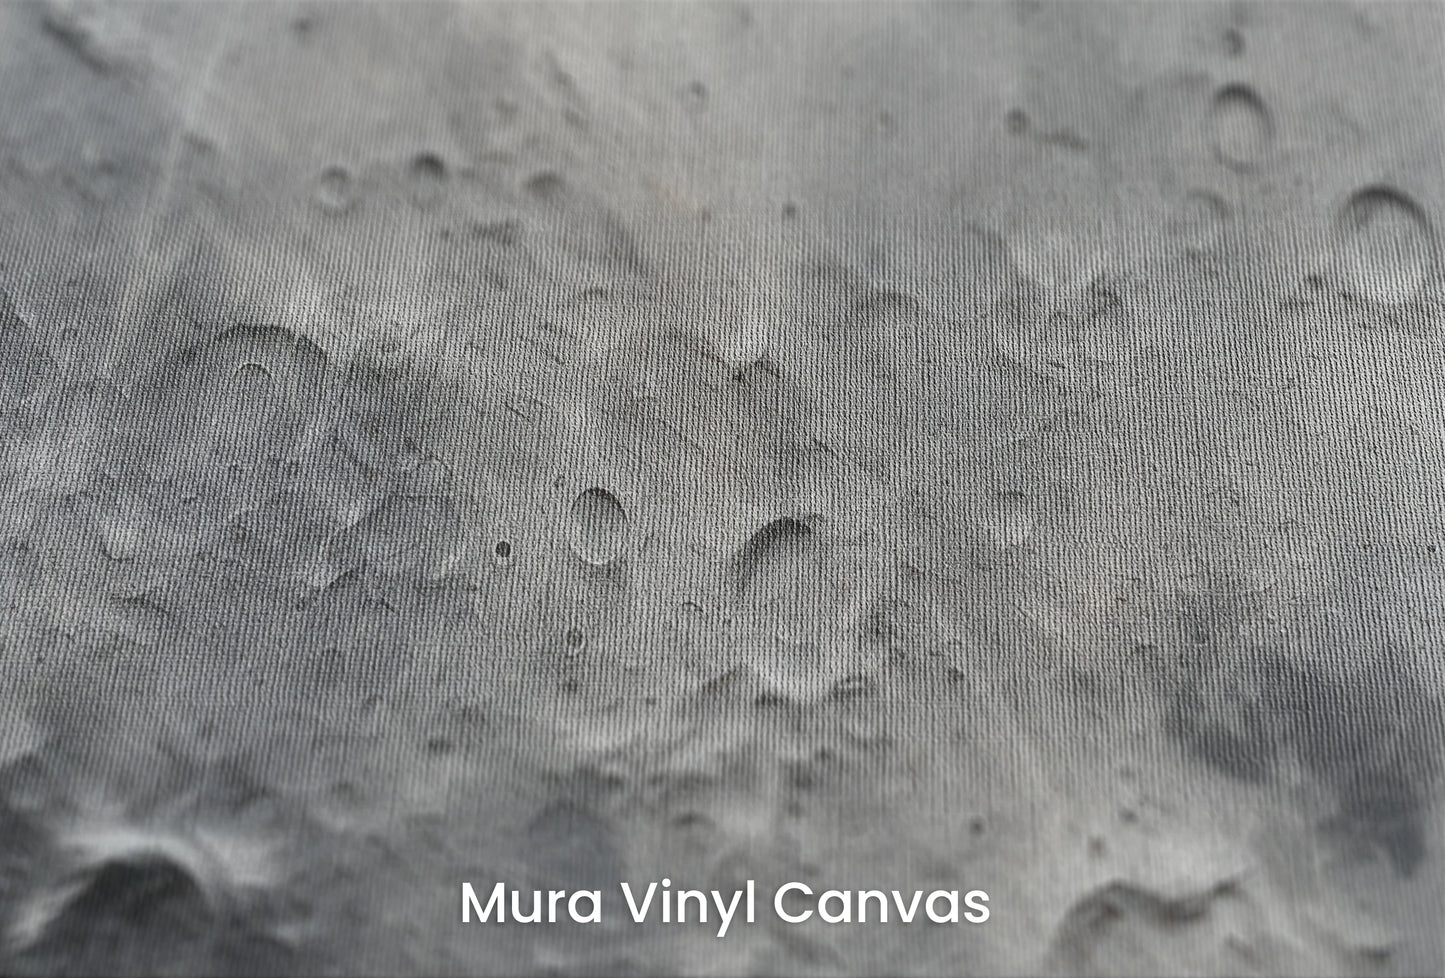 Zbliżenie na artystyczną fototapetę o nazwie Lunar Craters na podłożu Mura Vinyl Canvas - faktura naturalnego płótna.